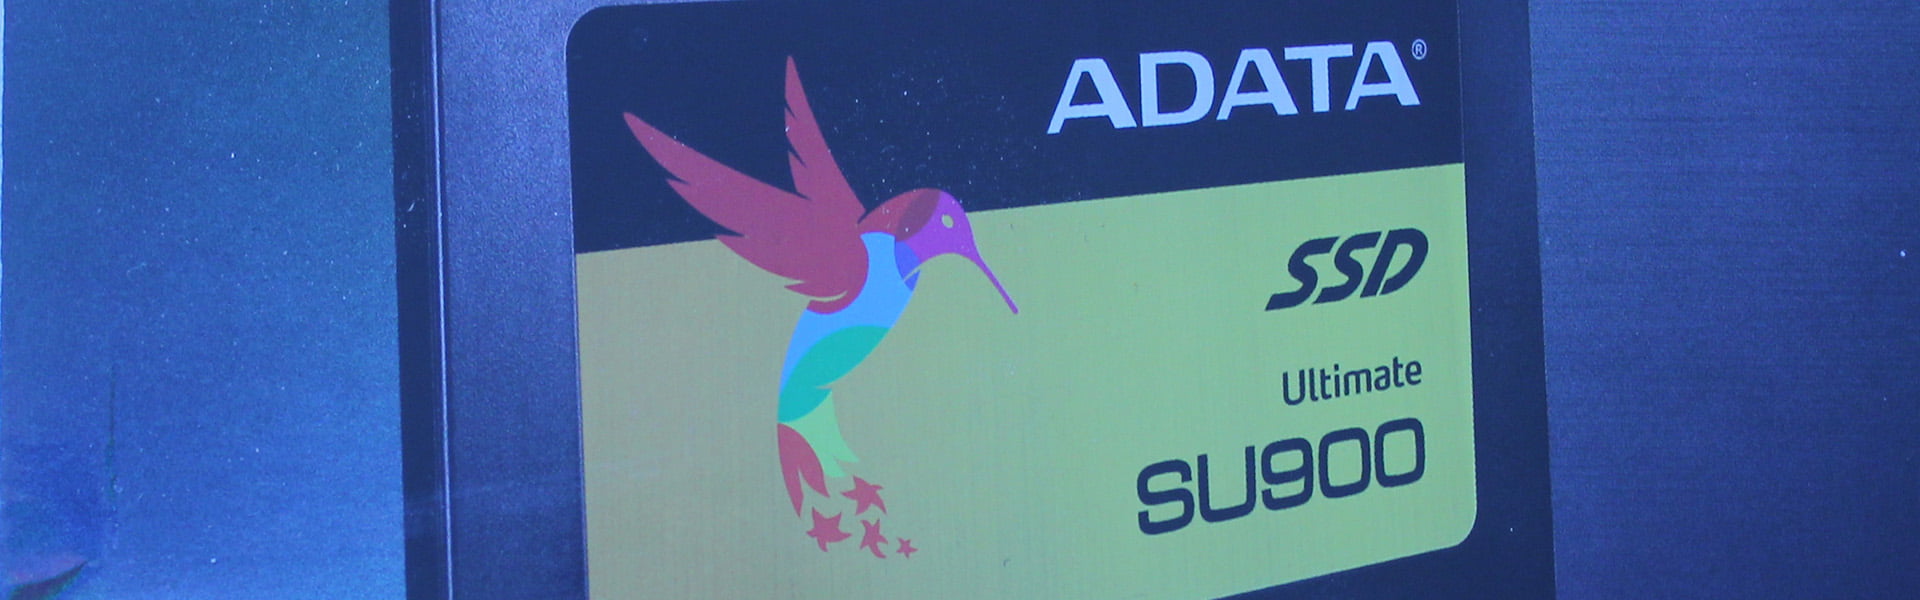 ADATA SU900 256GB Ultimate SSD Review 17